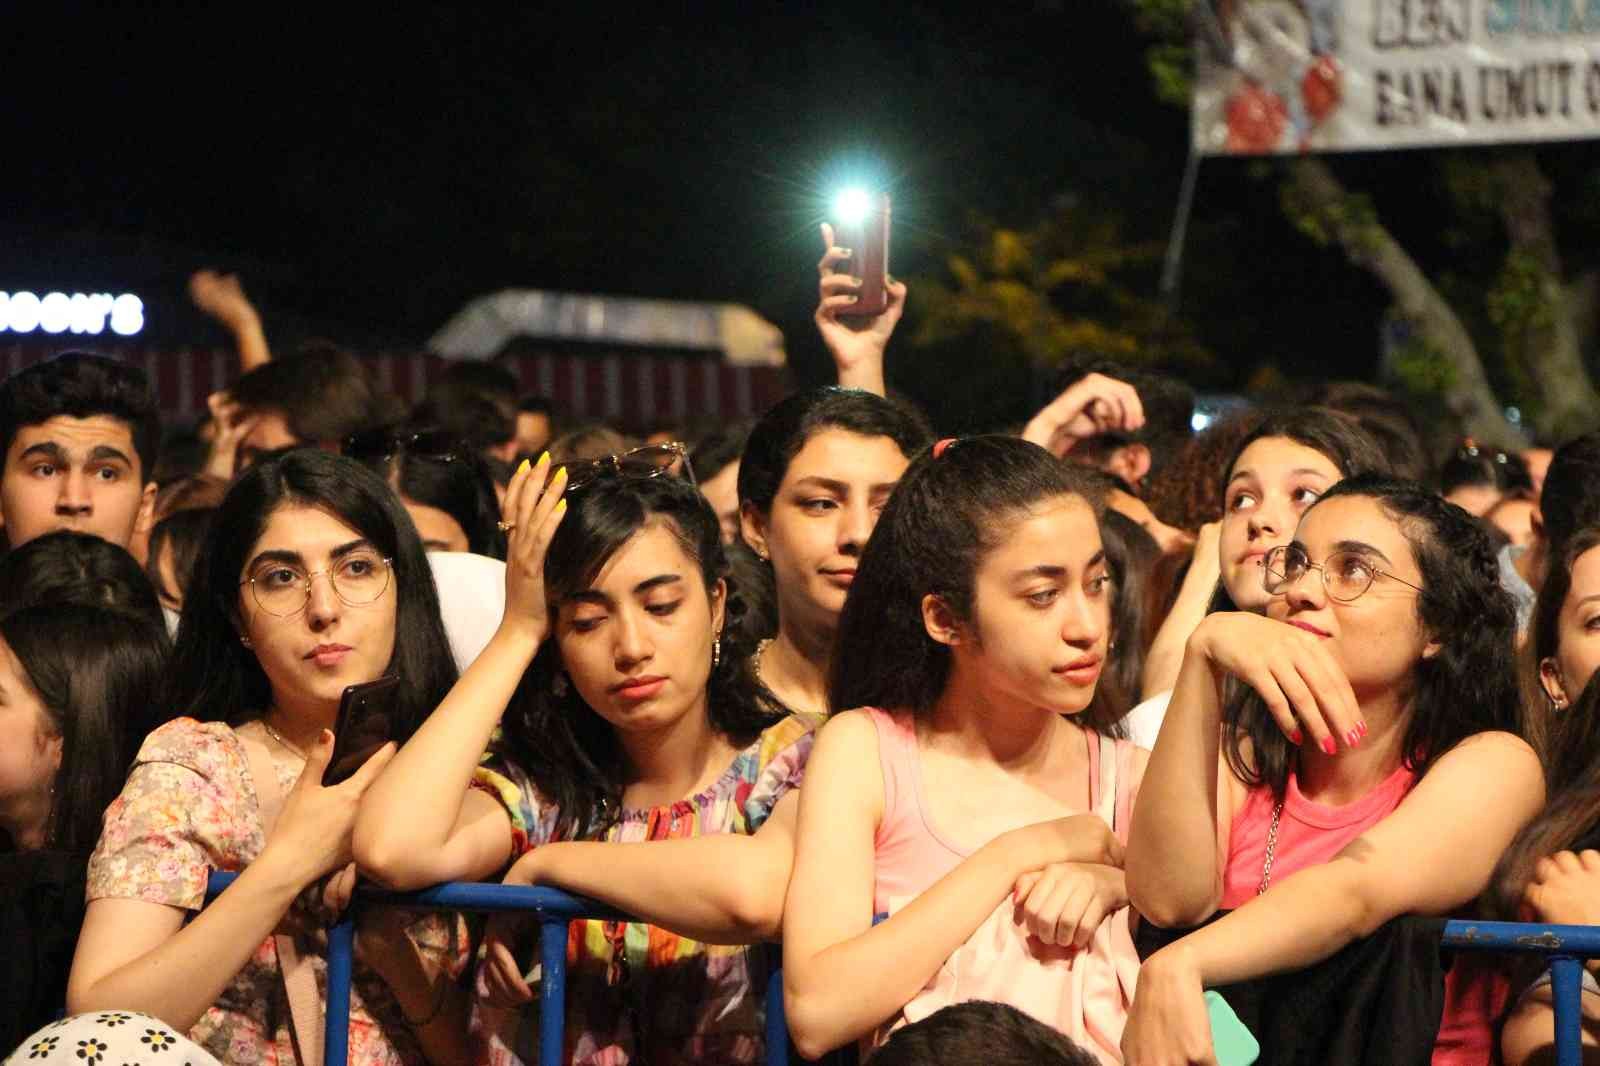 Balıkesir’in Bandırma ilçesinde 31. Uluslararası Bandırma Kuşcenneti Kültür ve Turizm Festivalinde ünlü pop yıldızı Simge Sağın sahne aldı. 31 ...